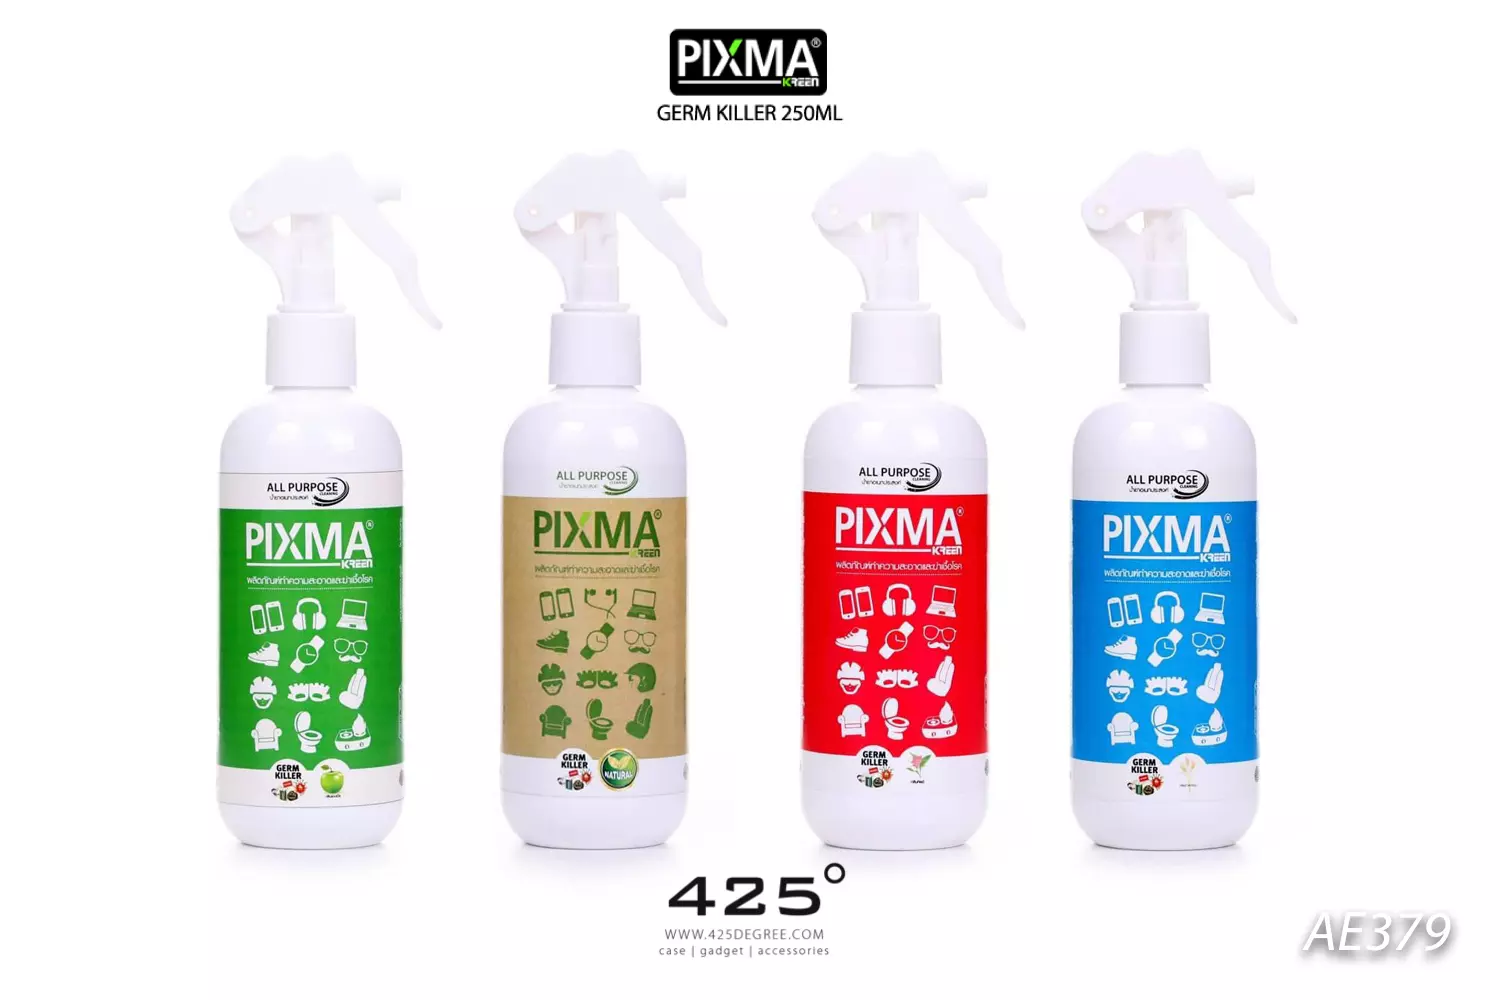 Pixma Kreen Germ Killer 250Ml (สเปรย์ทำความสะอาดและฆ่าเชื้อโรคอเนกประสงค์  250 มิลลิลิตร) รีวิวชัด คัดของดี สั่งง่าย ส่งไว ได้ของชัวร์